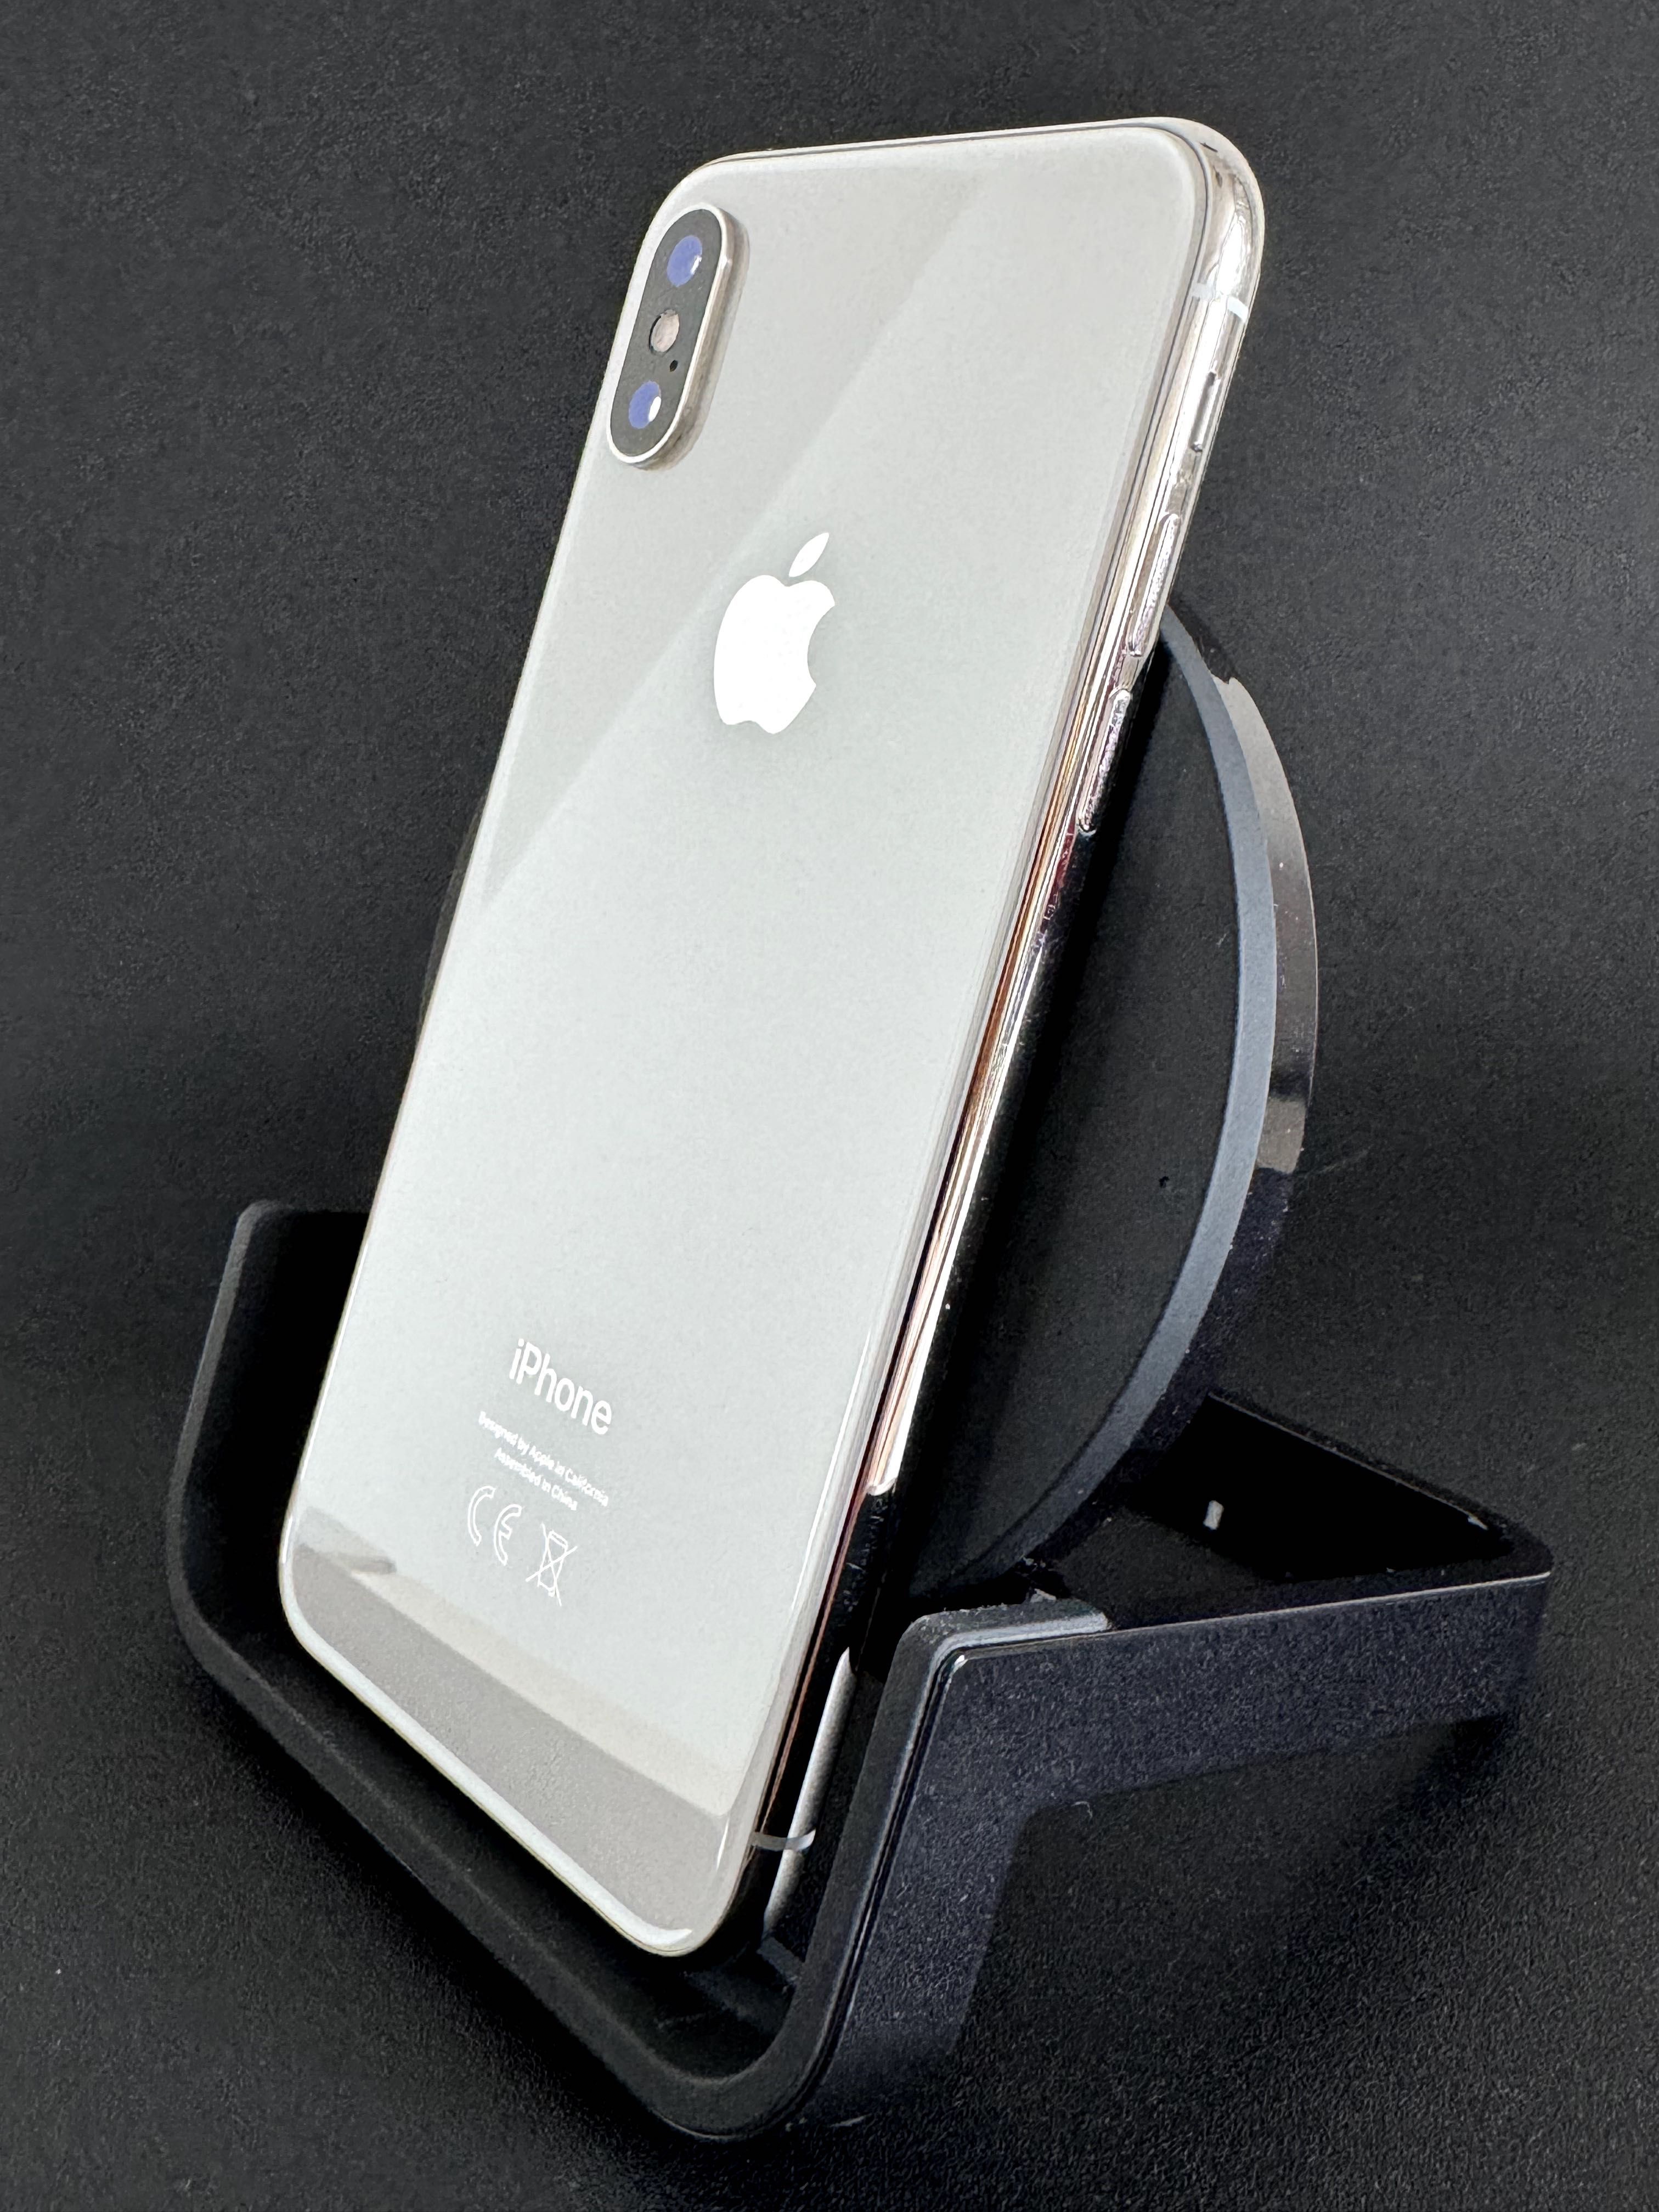 iPhone X 256 gb Silver